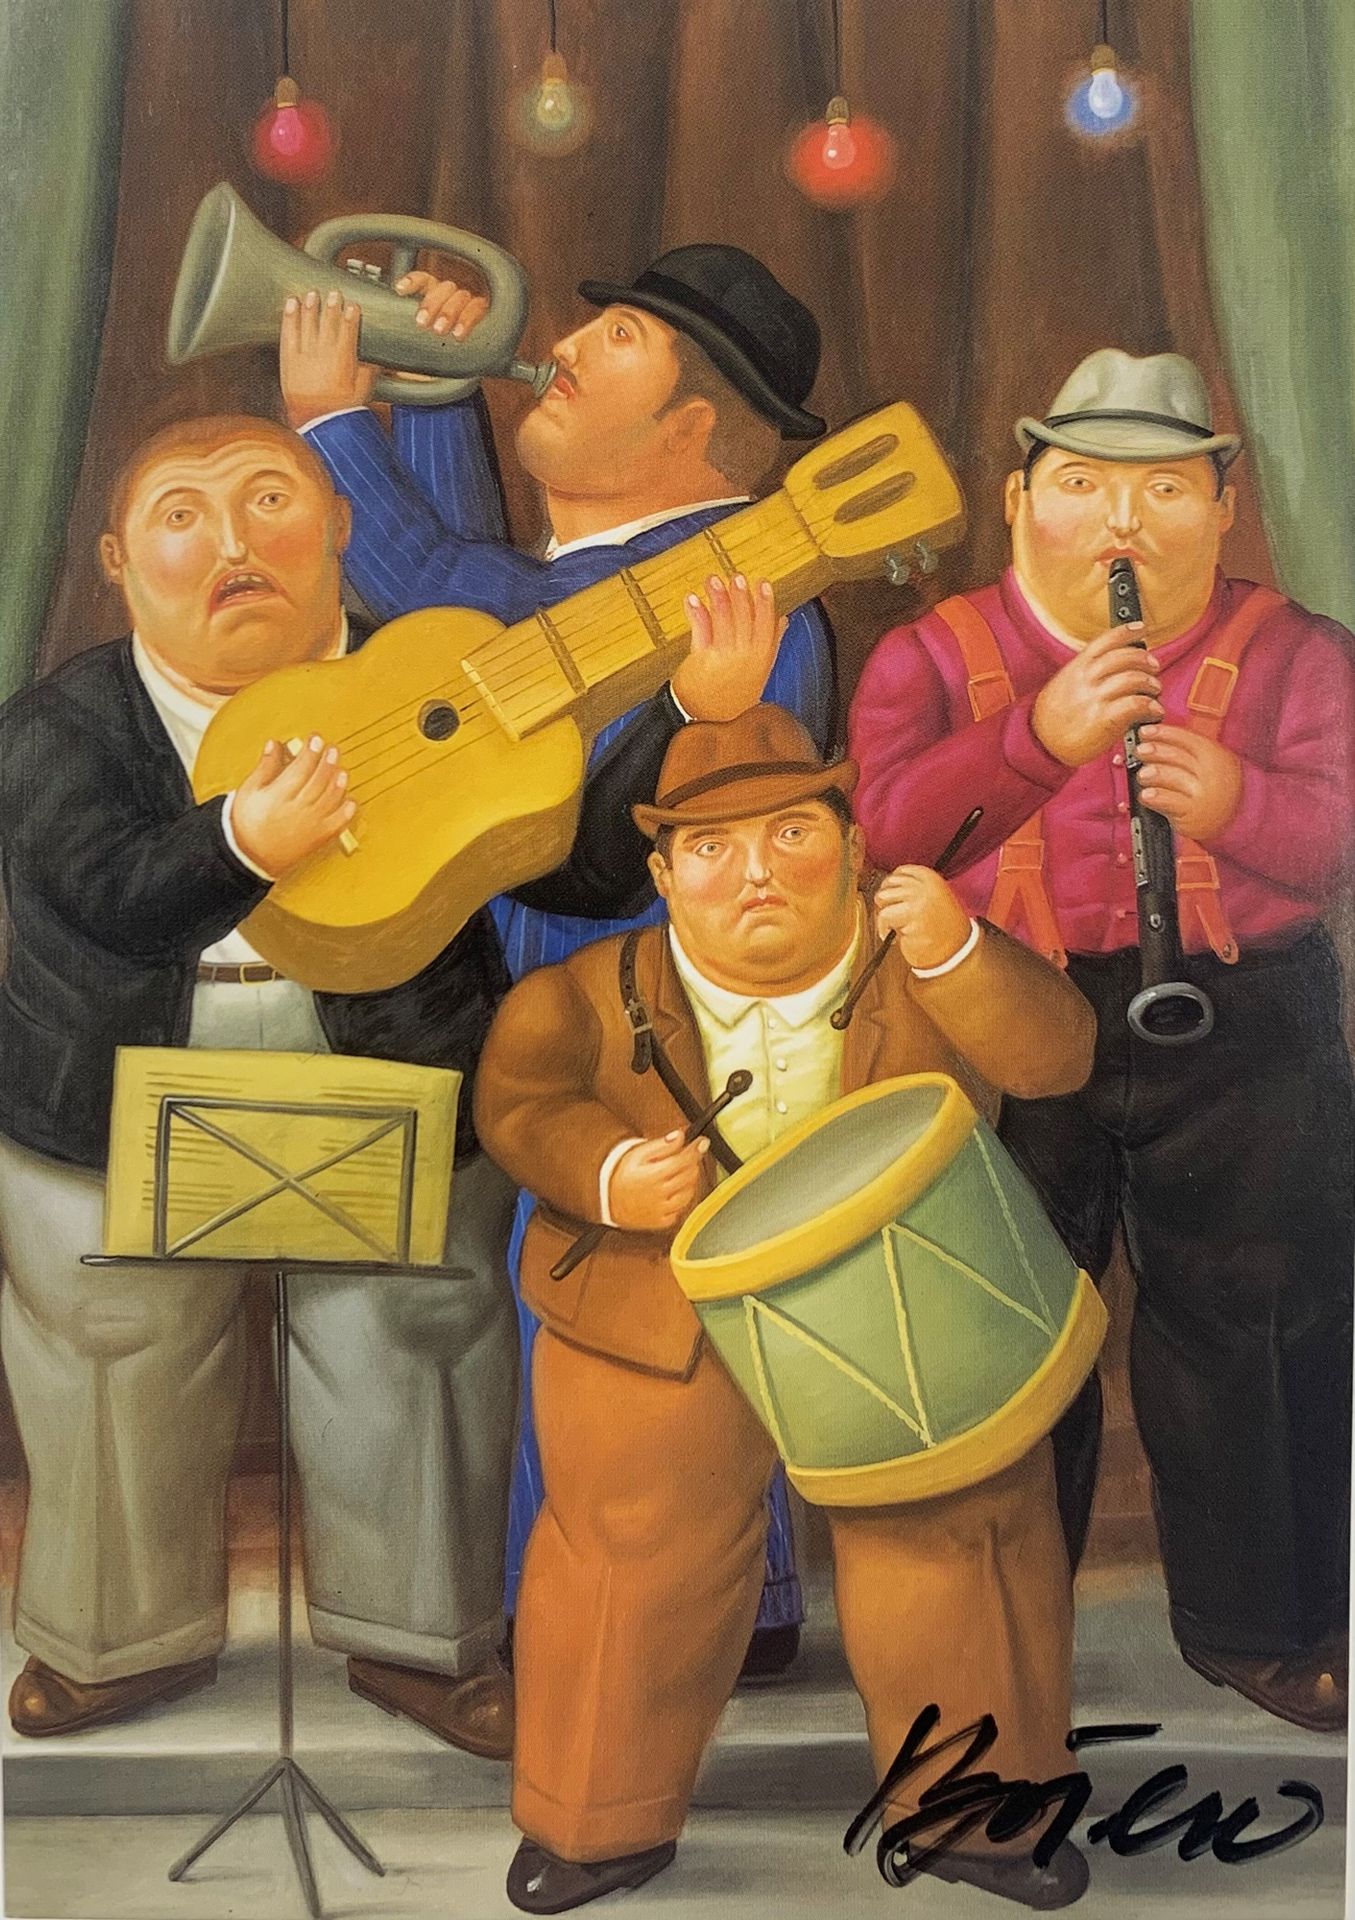 Fernando Botero (né en 1932) MUSICIENS, 2001
Postkarte
Mit schwarzem Filzstift s&hellip;